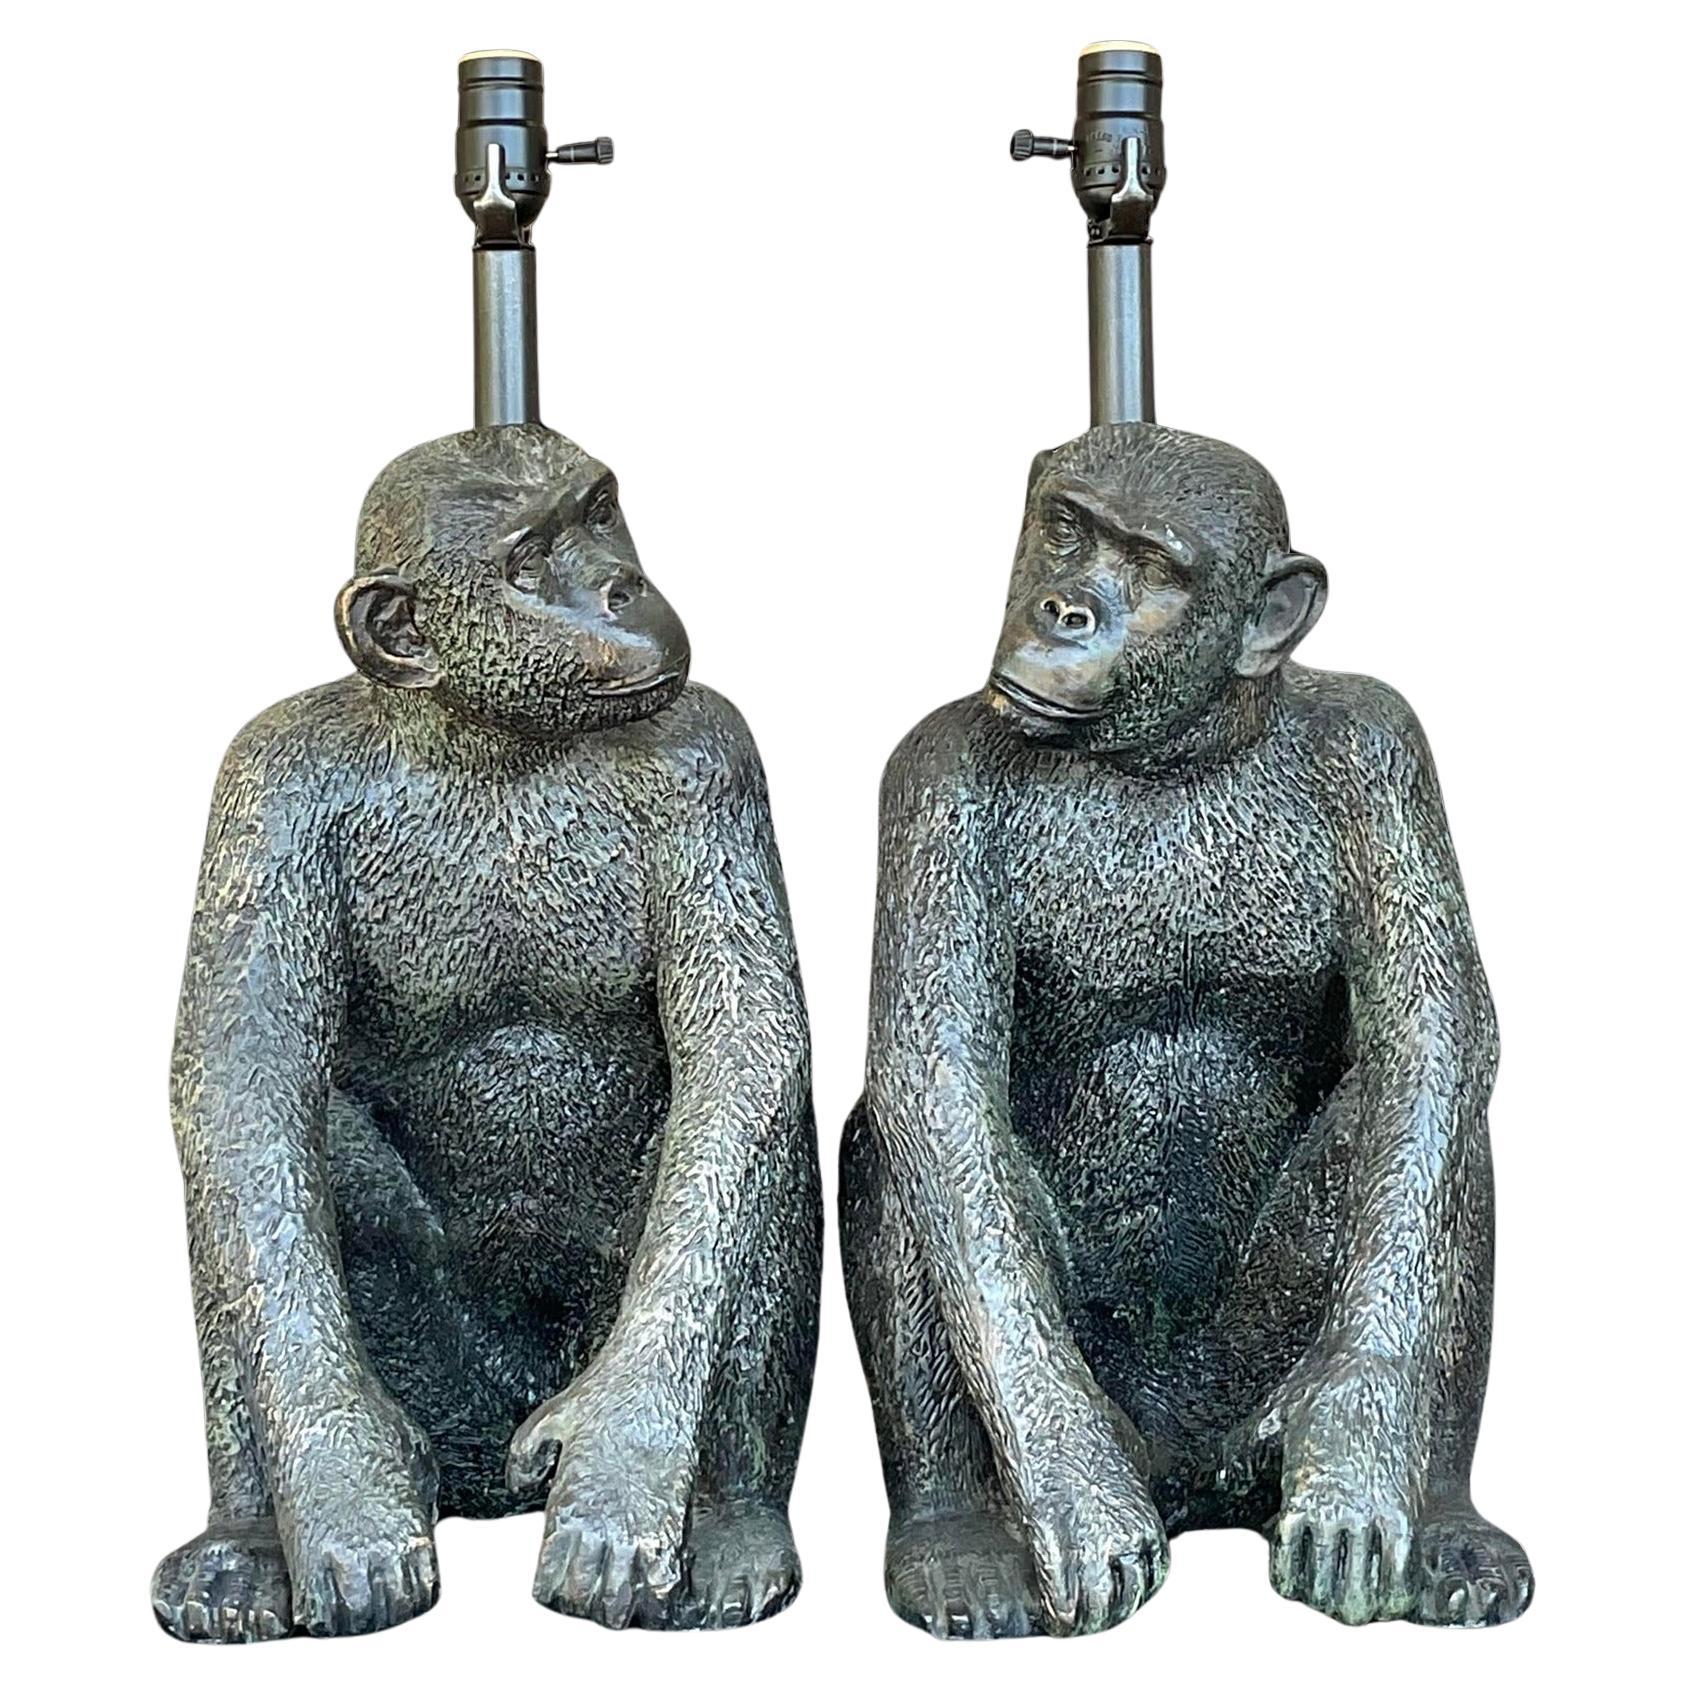 Vintage Boho Patinierte Affen-Tischlampen im Vintage-Stil - ein Paar